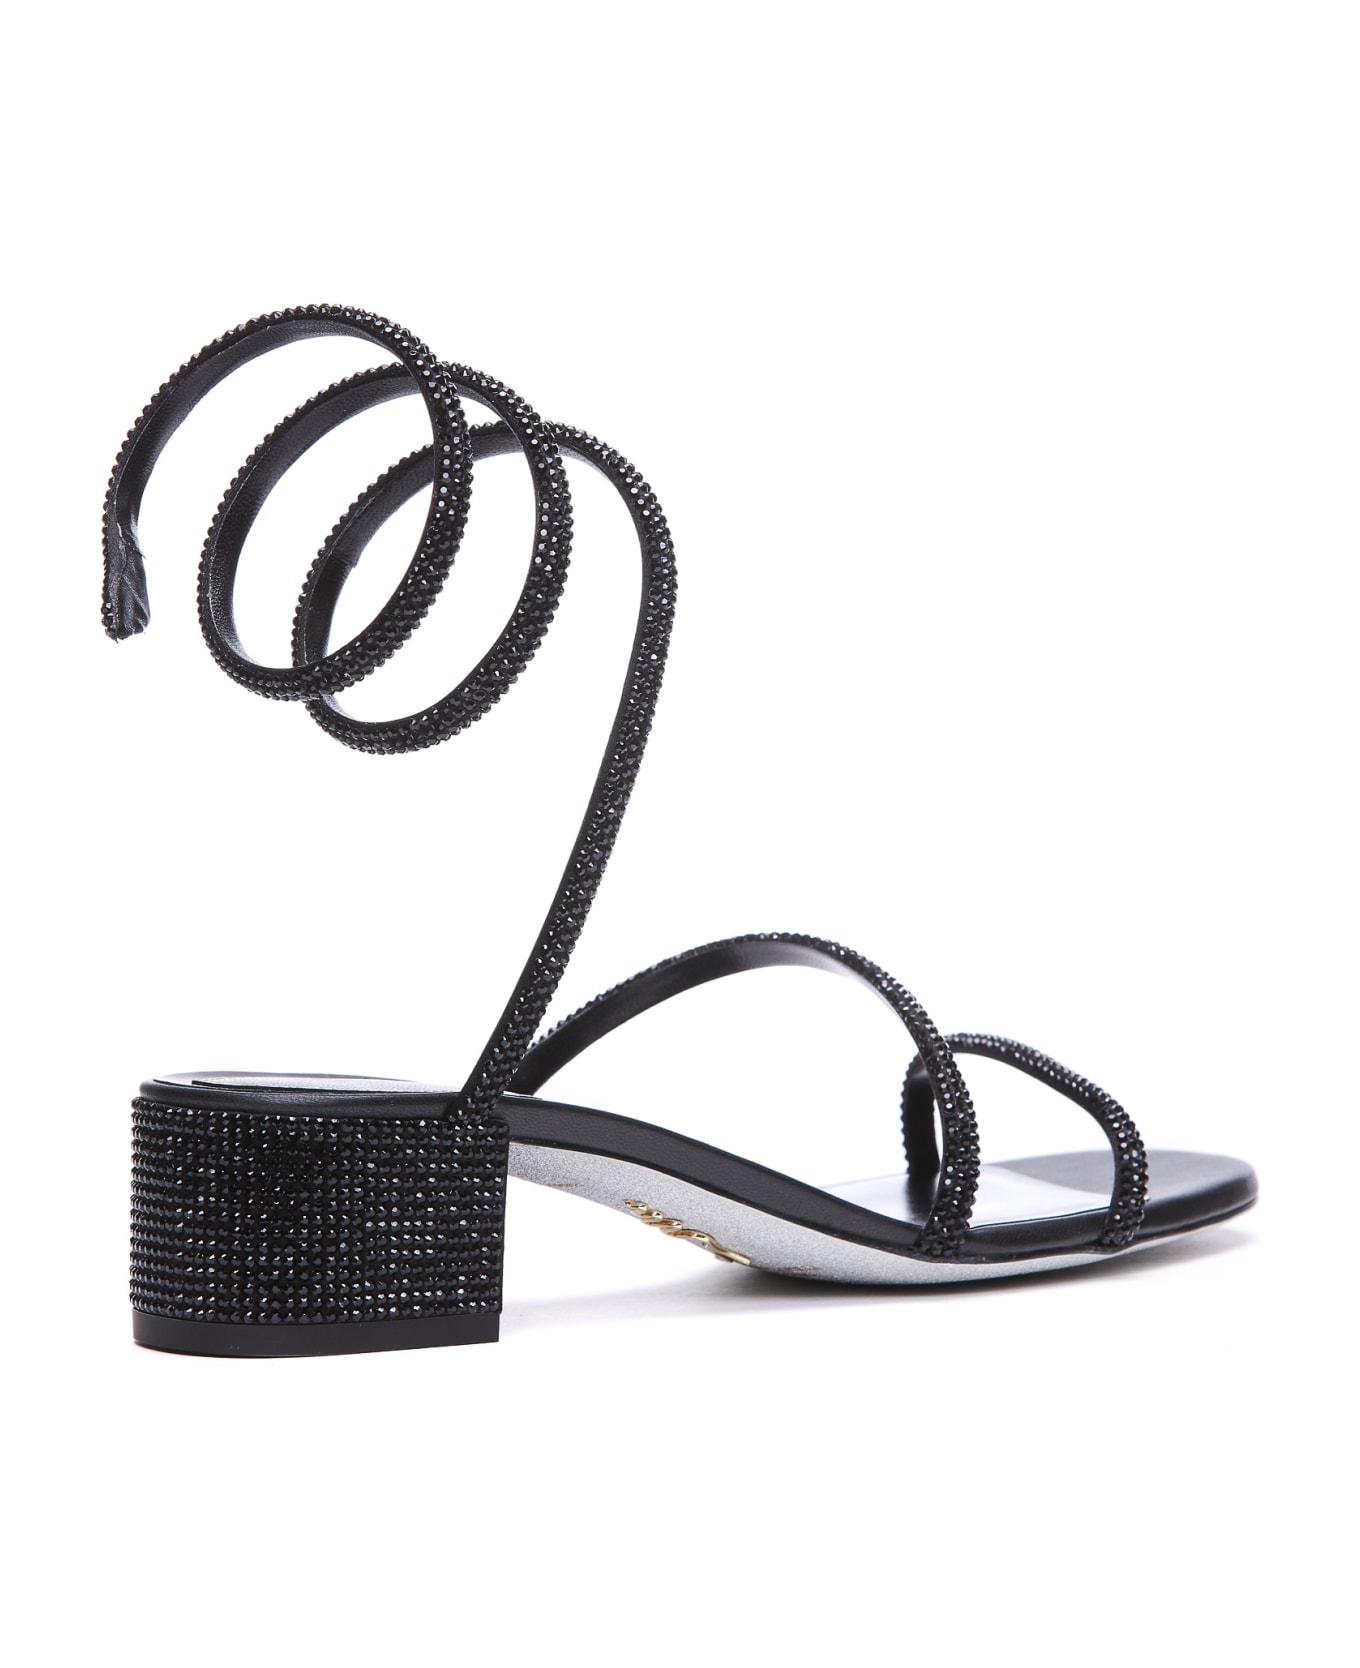 René Caovilla Cleo Pump Sandals - Black